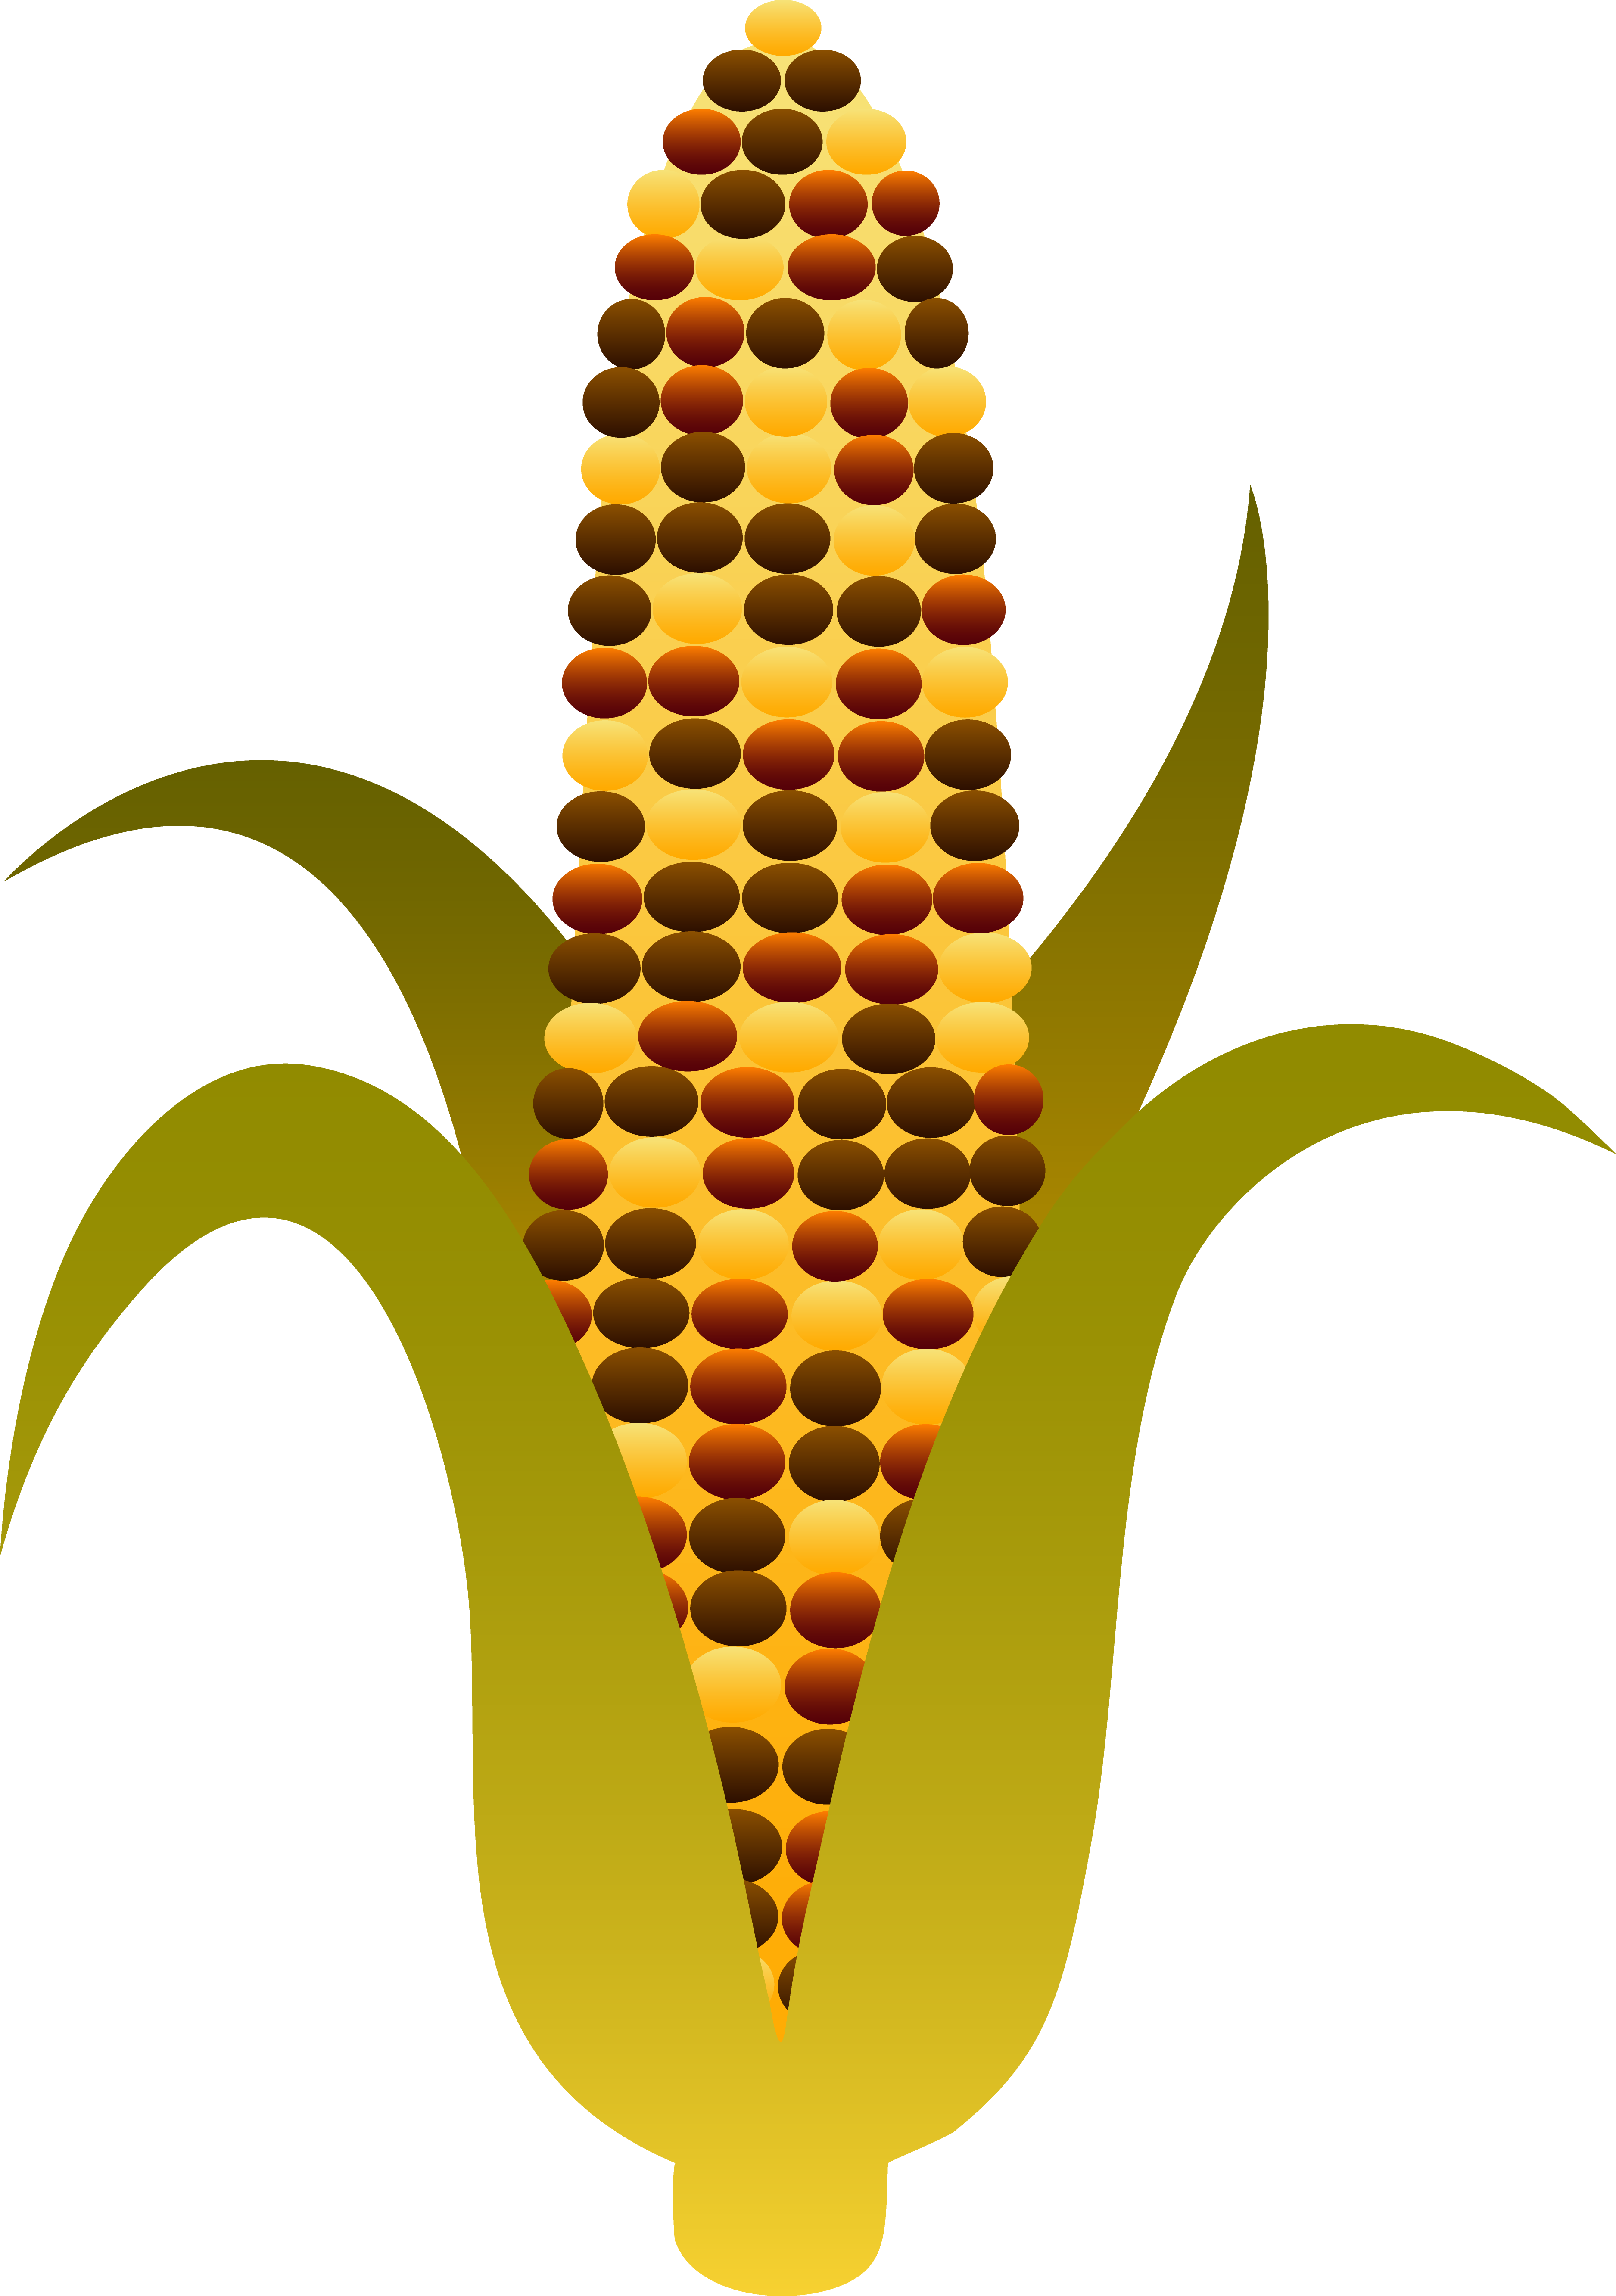 Indian Corn - Vector art in I